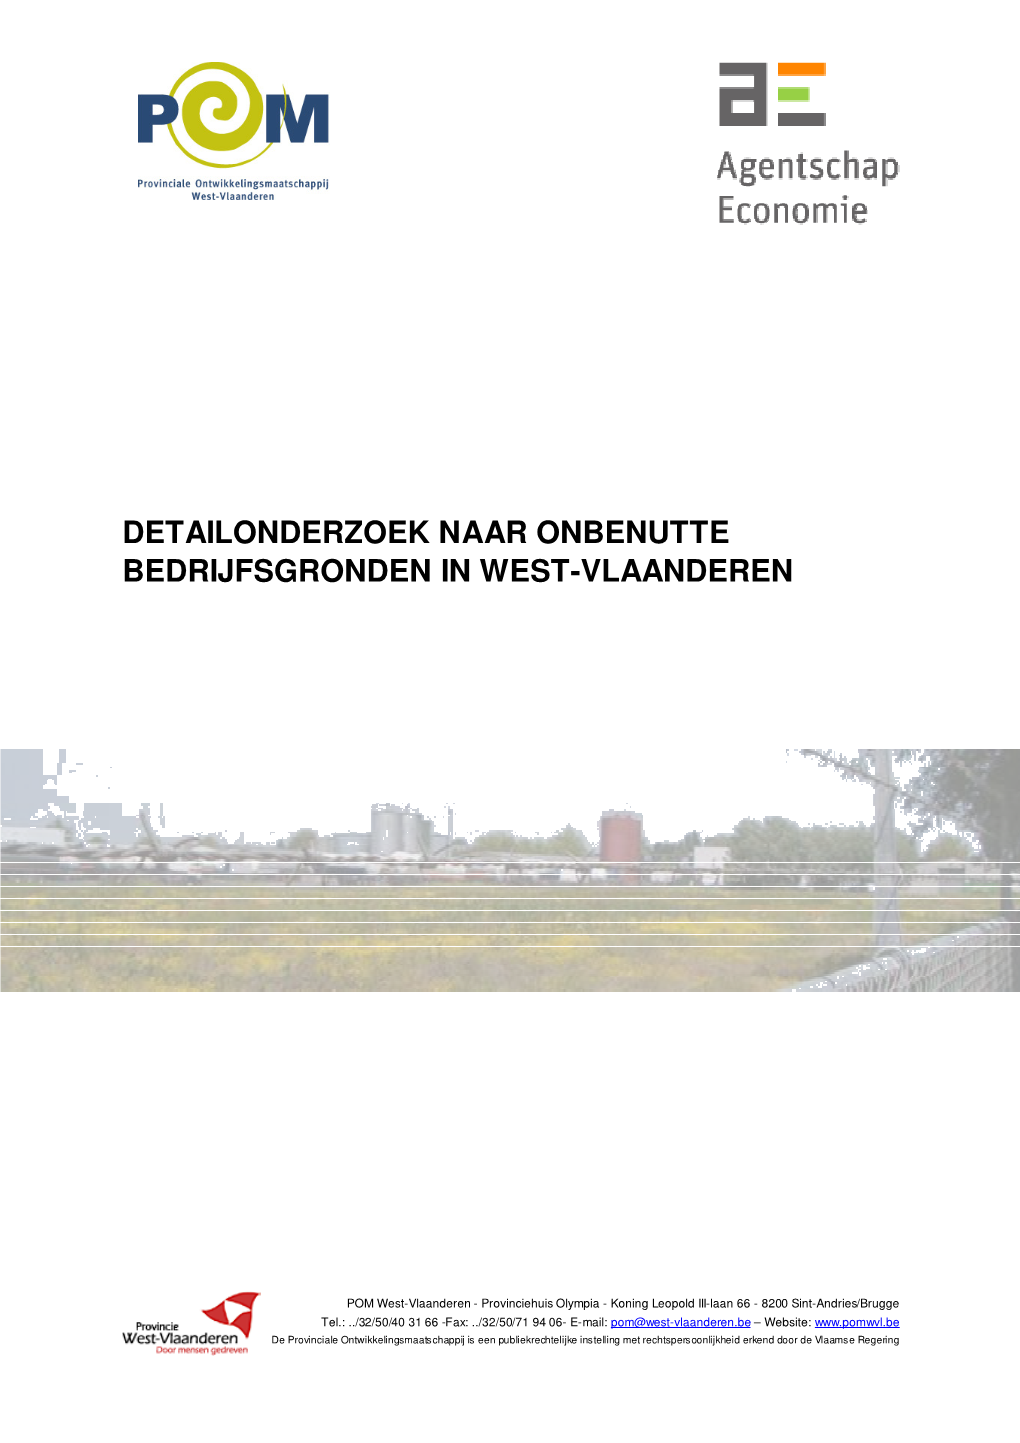 Detailonderzoek Naar Onbenutte Bedrijfsgronden in West-Vlaanderen